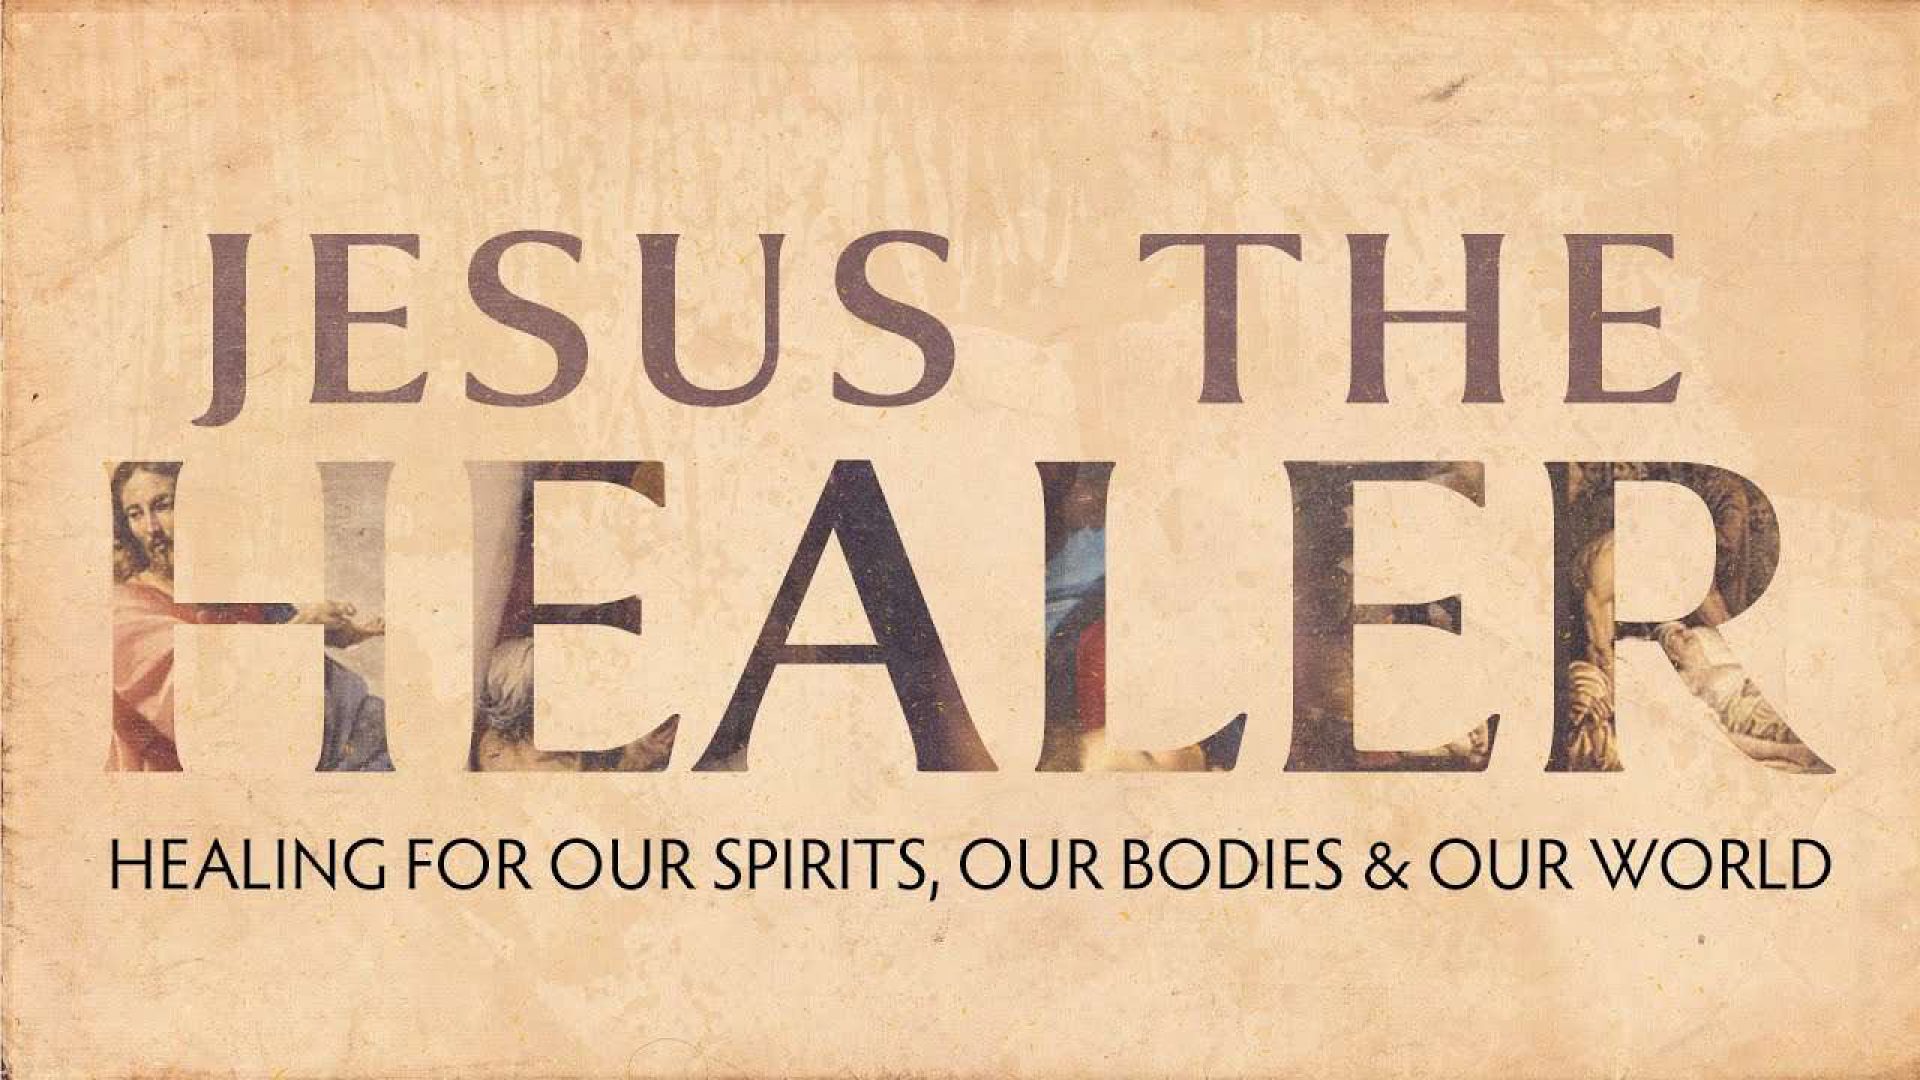 Jesus Is The Healer